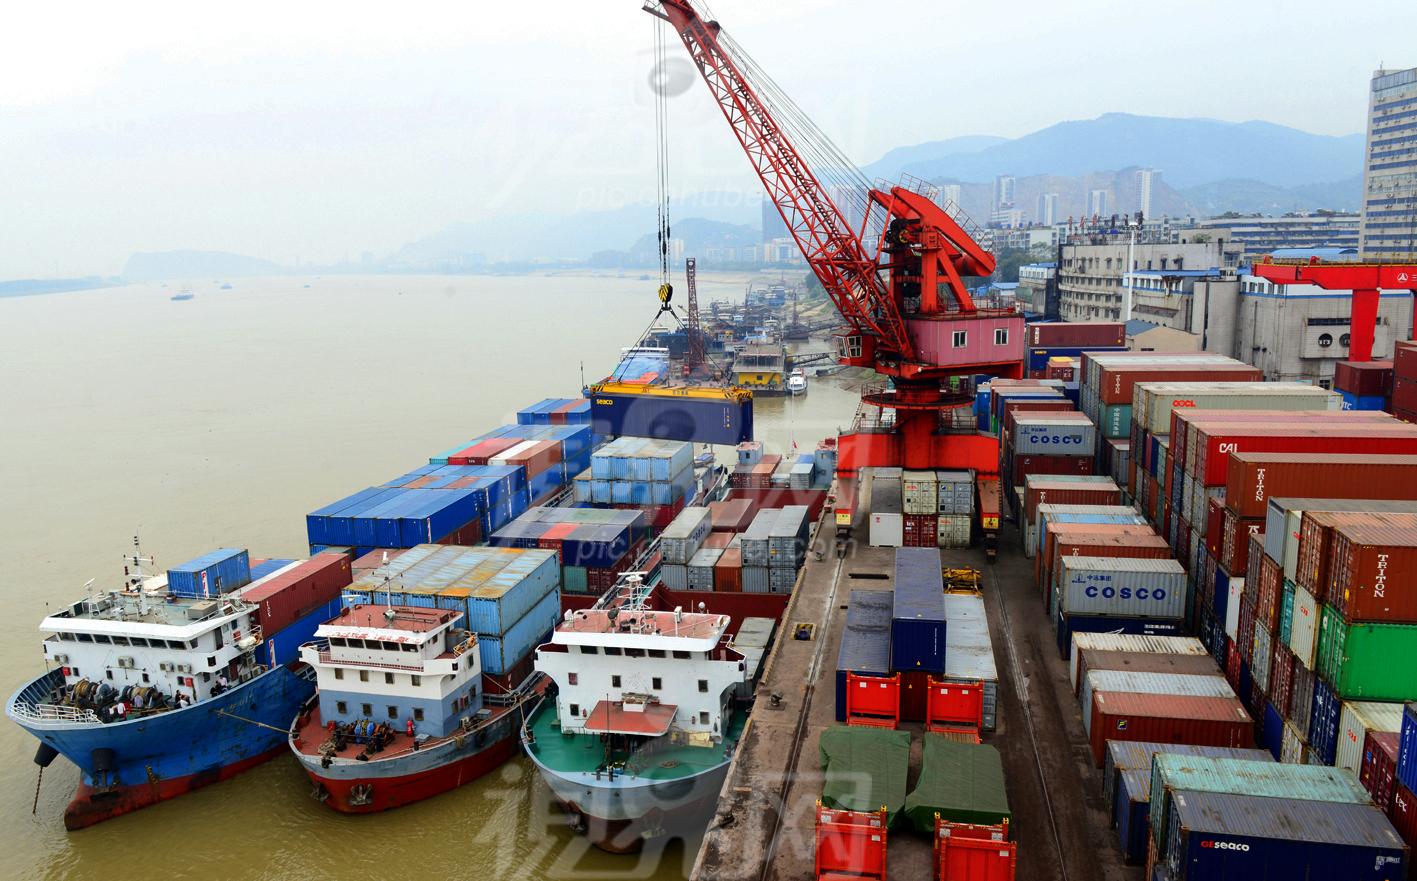 长江三峡水库变动回水区碍航礁石炸除二期工程初步设计通过交通运输部批准